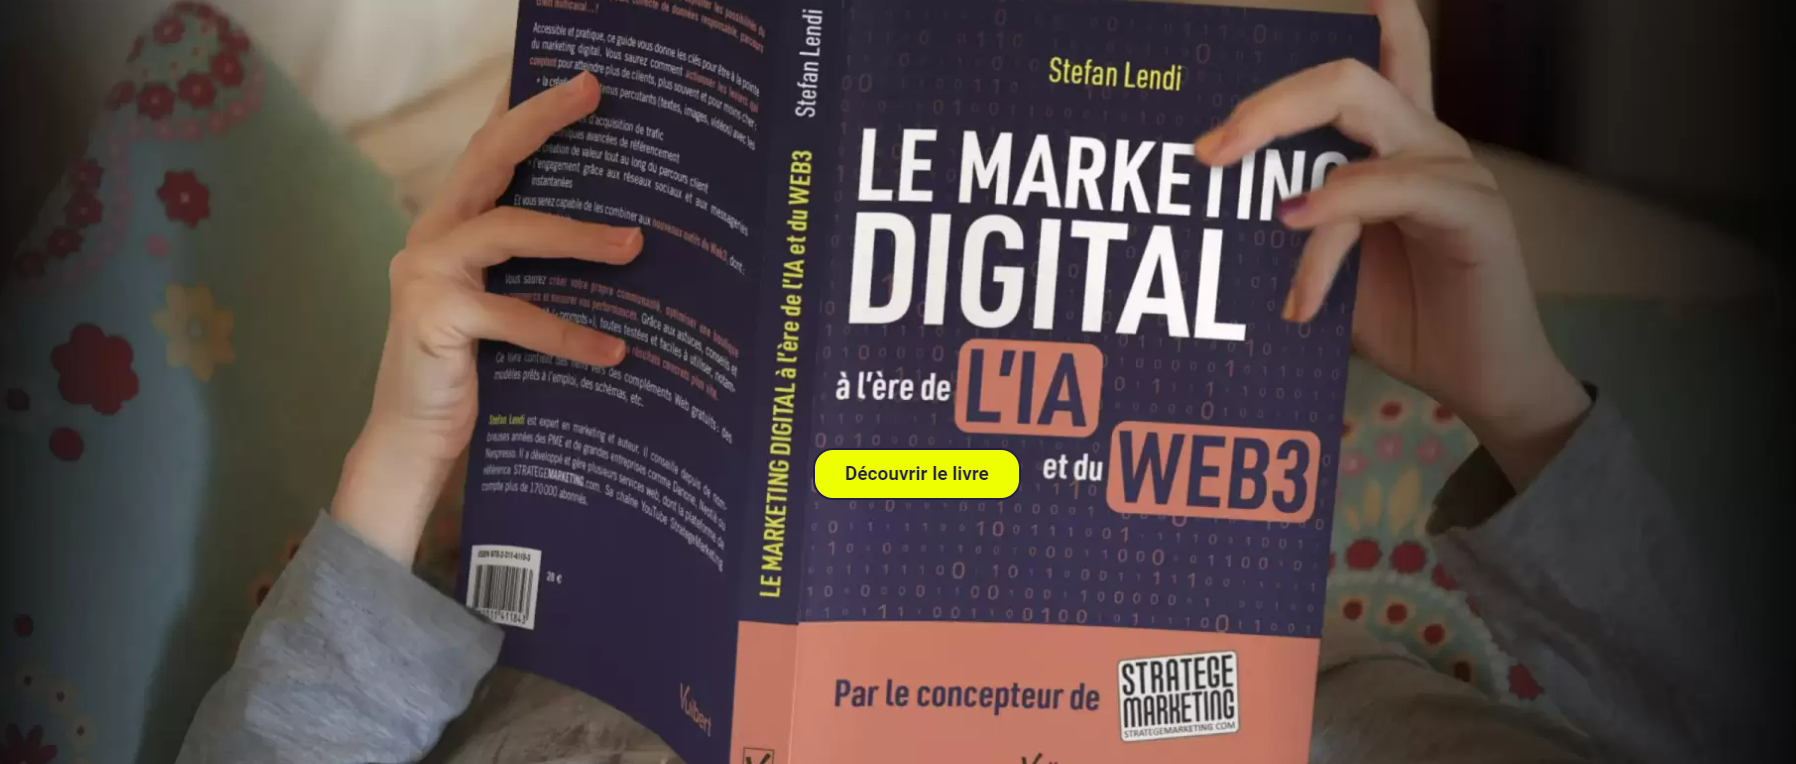 Le Marketing Digital à l'ère de l'IA et du Web 3 - Ce qu'il faut retenir du nouveau livre de Stefan Lendi 26